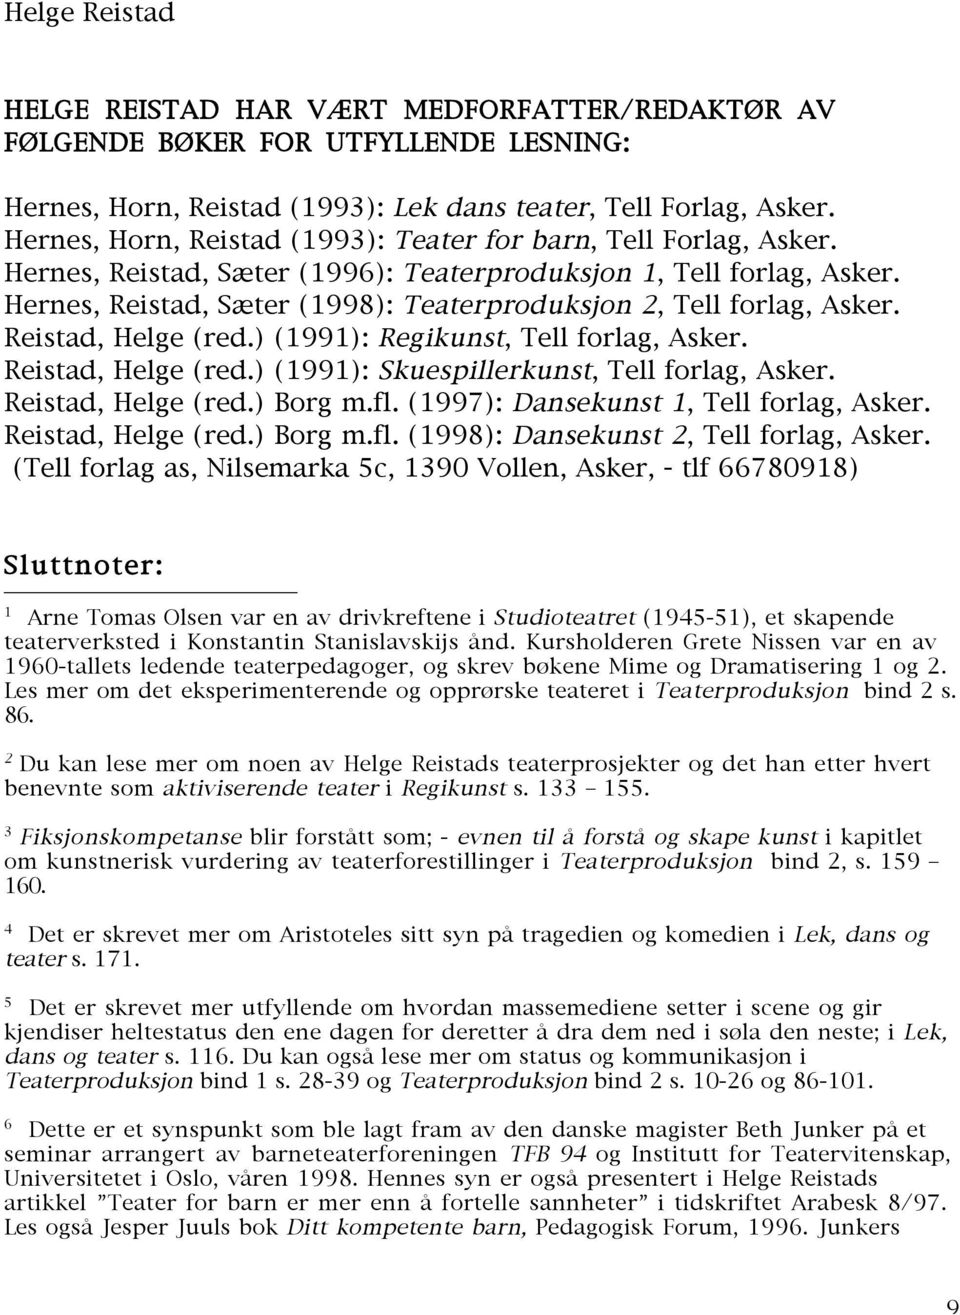 Hernes, Reistad, Sæter (1998): Teaterproduksjon 2, Tell forlag, Asker. Reistad, Helge (red.) (1991): Regikunst, Tell forlag, Asker. Reistad, Helge (red.) (1991): Skuespillerkunst, Tell forlag, Asker.